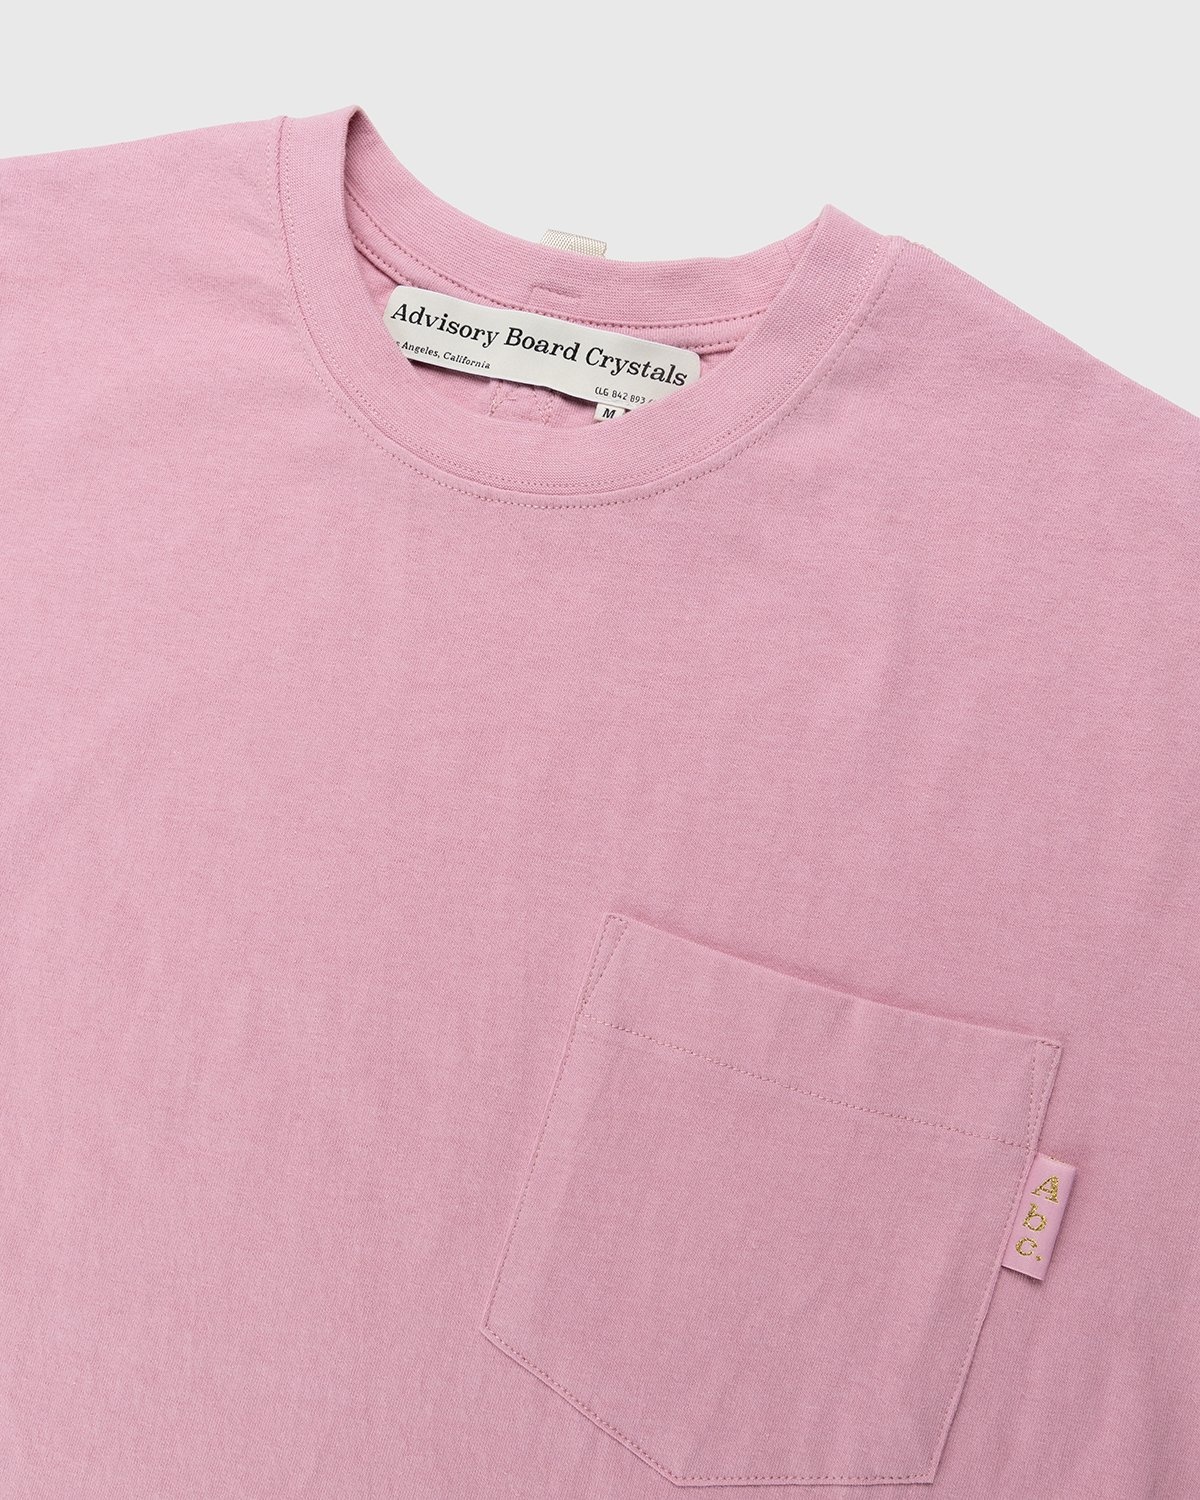 Abc. – Short-Sleeve Pocket Tee Morganite - T-shirts - Pink - Image 4